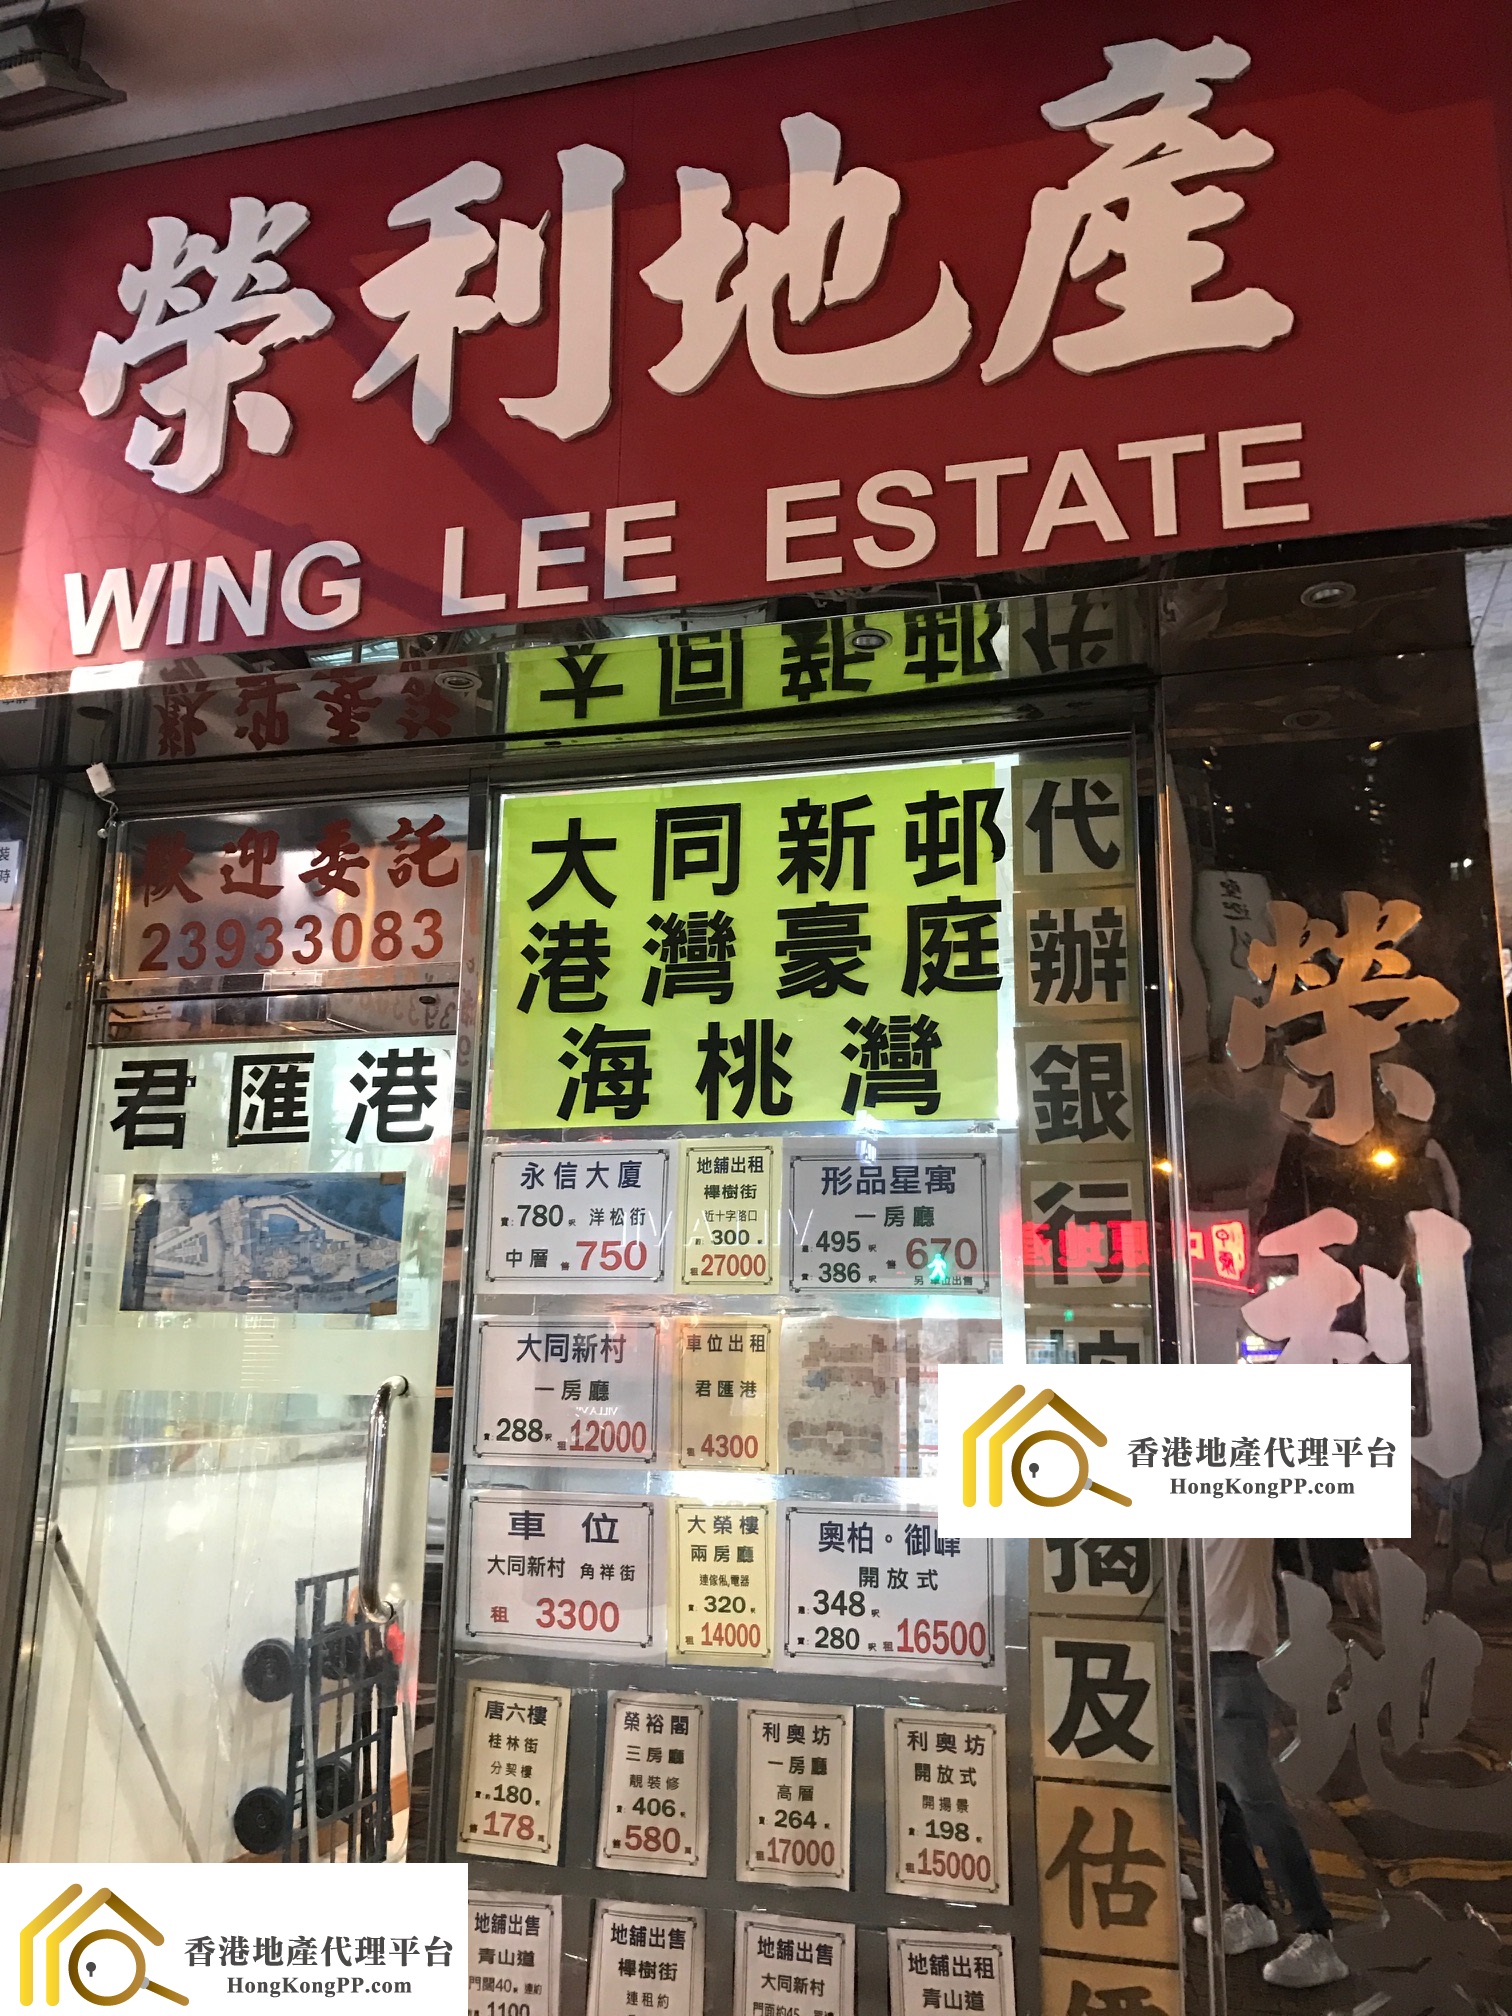 地產代理公司: 榮利地產 Wing Lee Estate